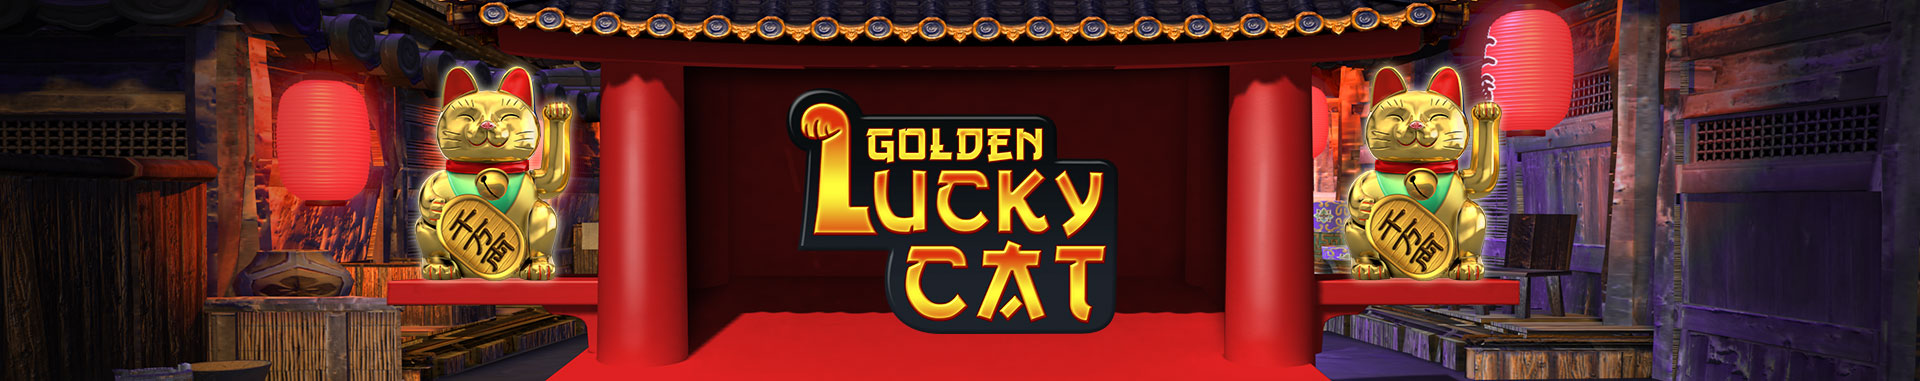 Videobingo Golden Lucky Cat